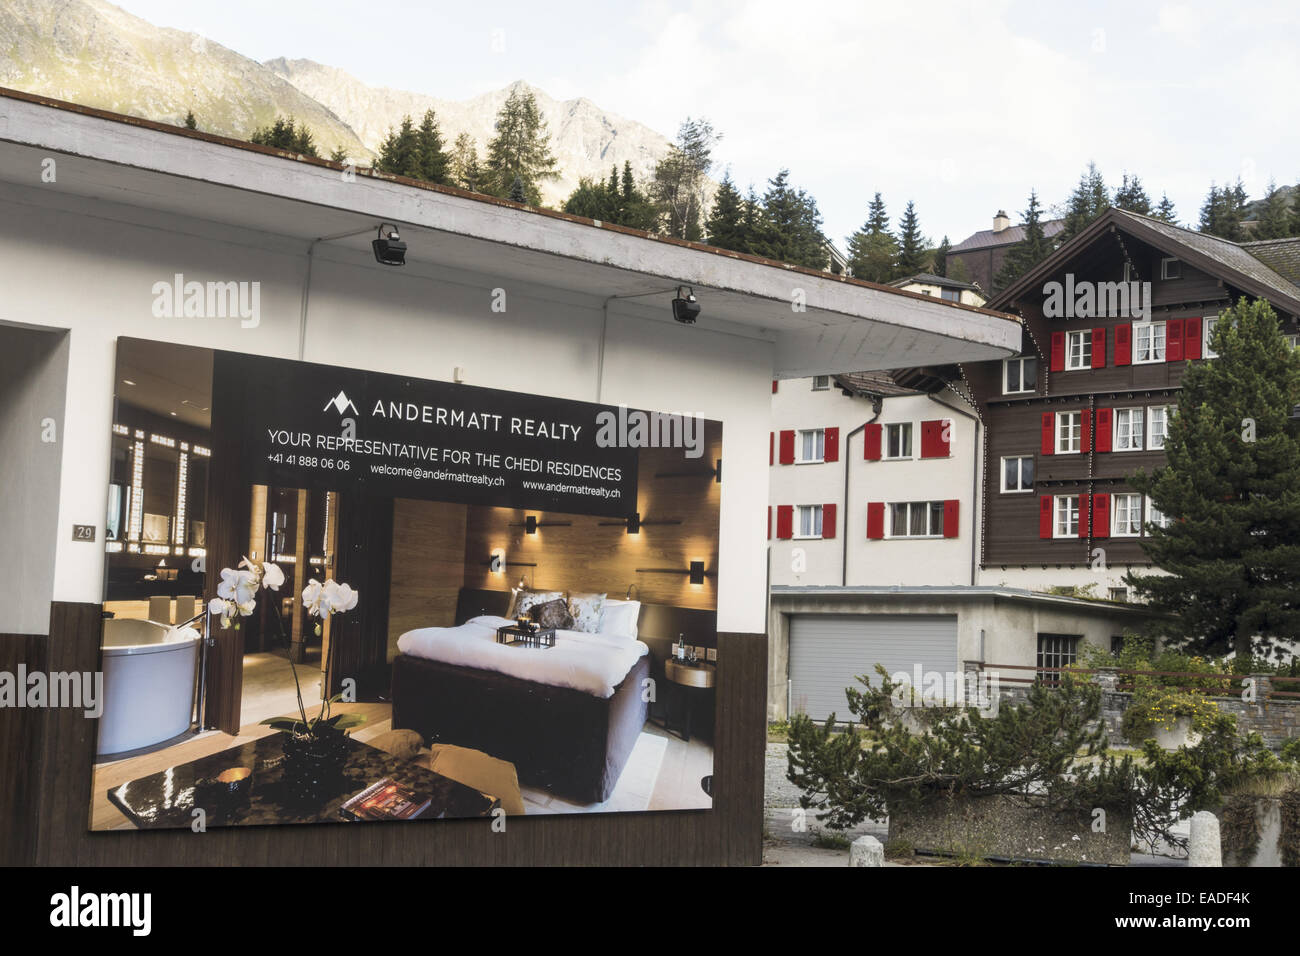 Proyecto de Turismo Inmobiliario por investor Samih Sawiri, Andermatt, Uri, Suiza Foto de stock